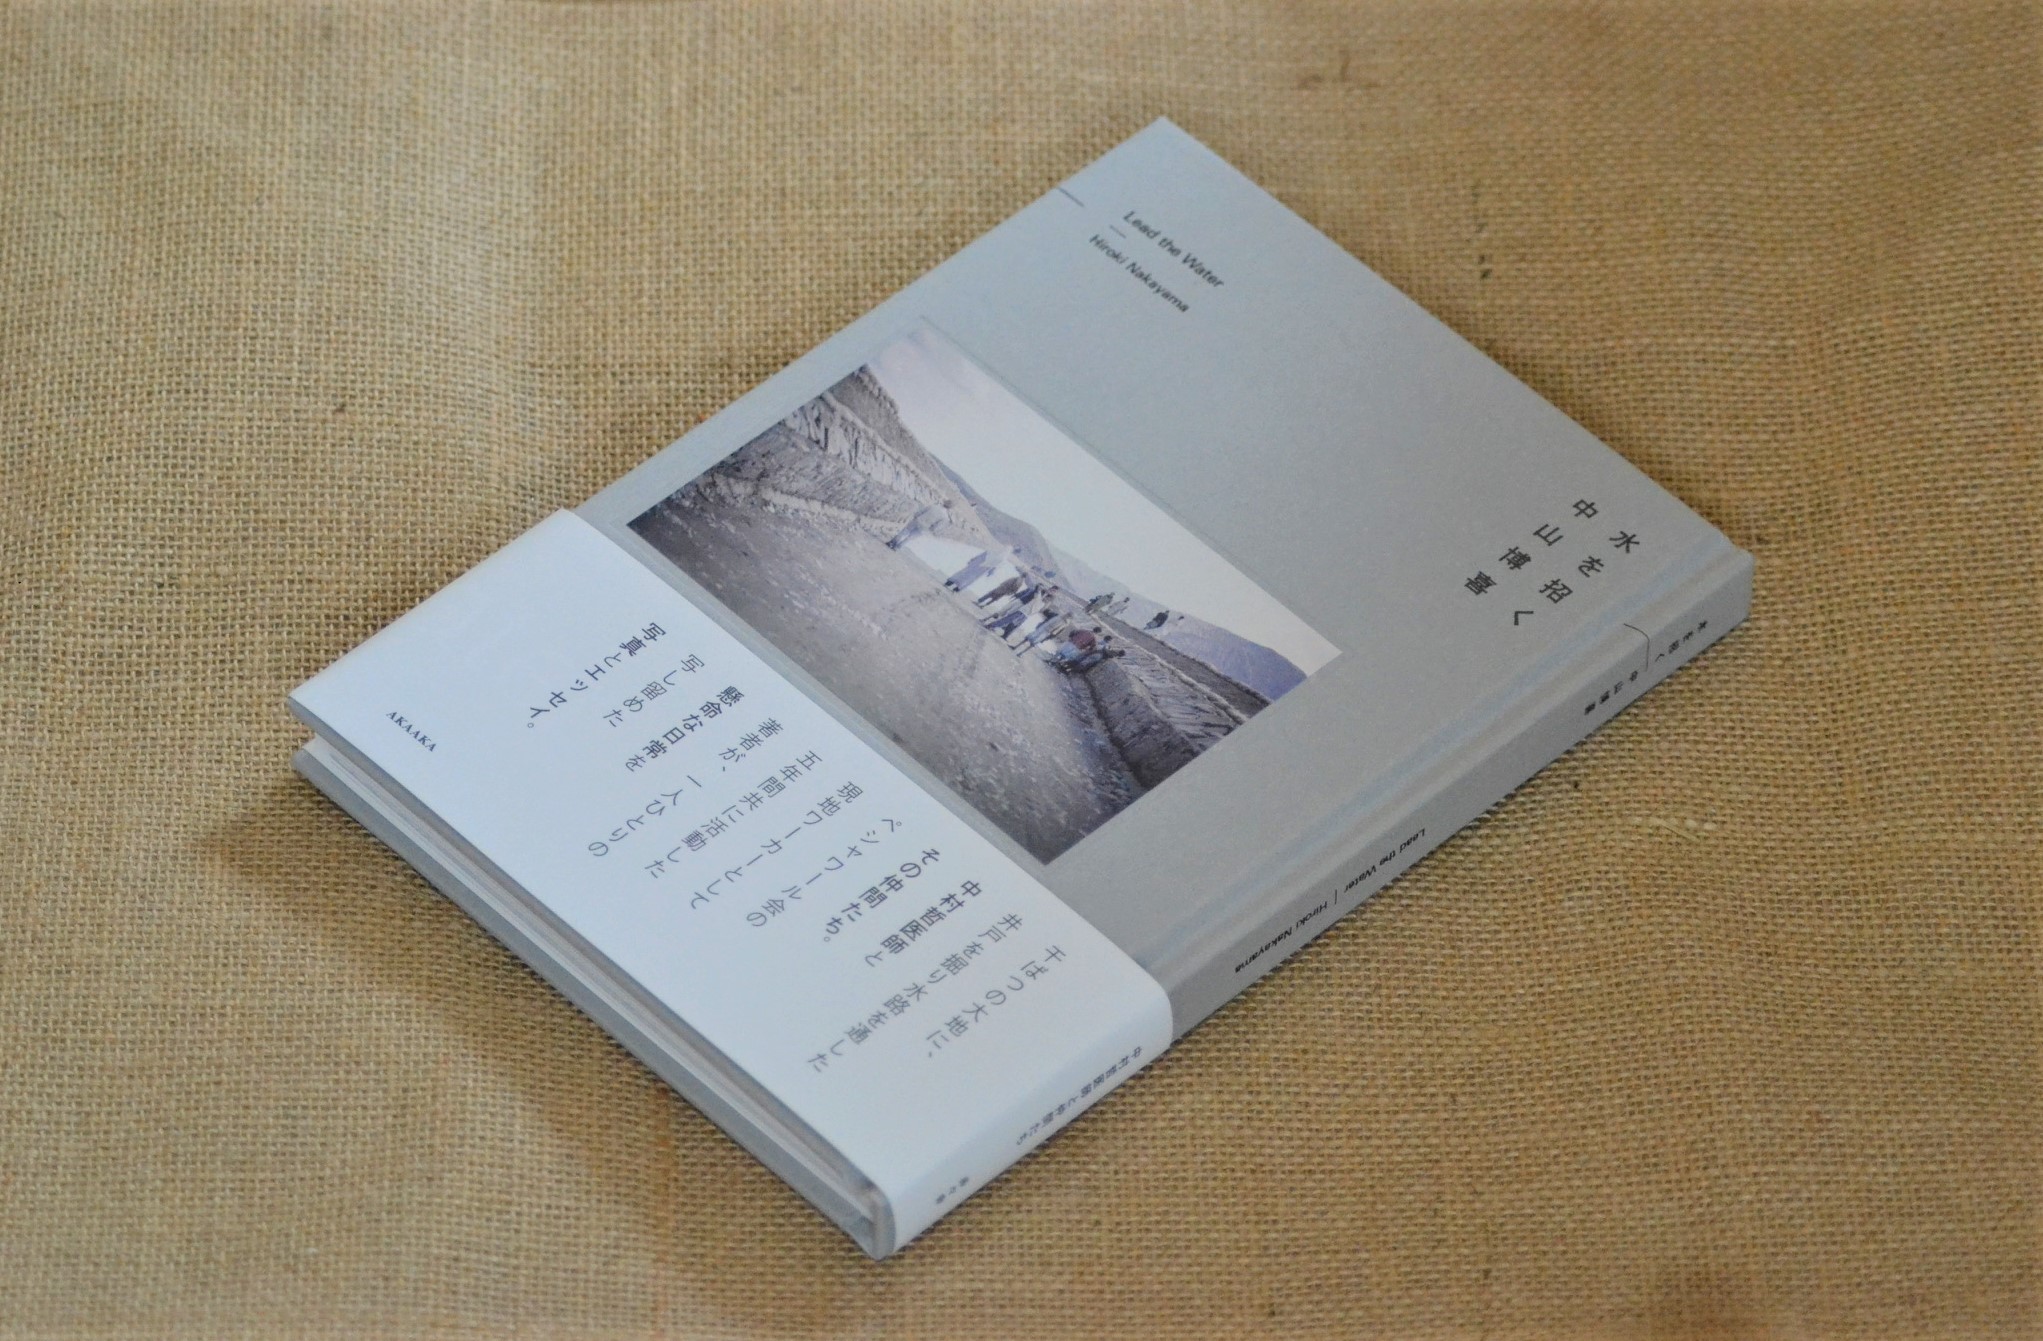 「ペシャワール会」の中村哲氏と5年間行動を共にした中山博喜氏の写真集「水を招く」を印刷しました